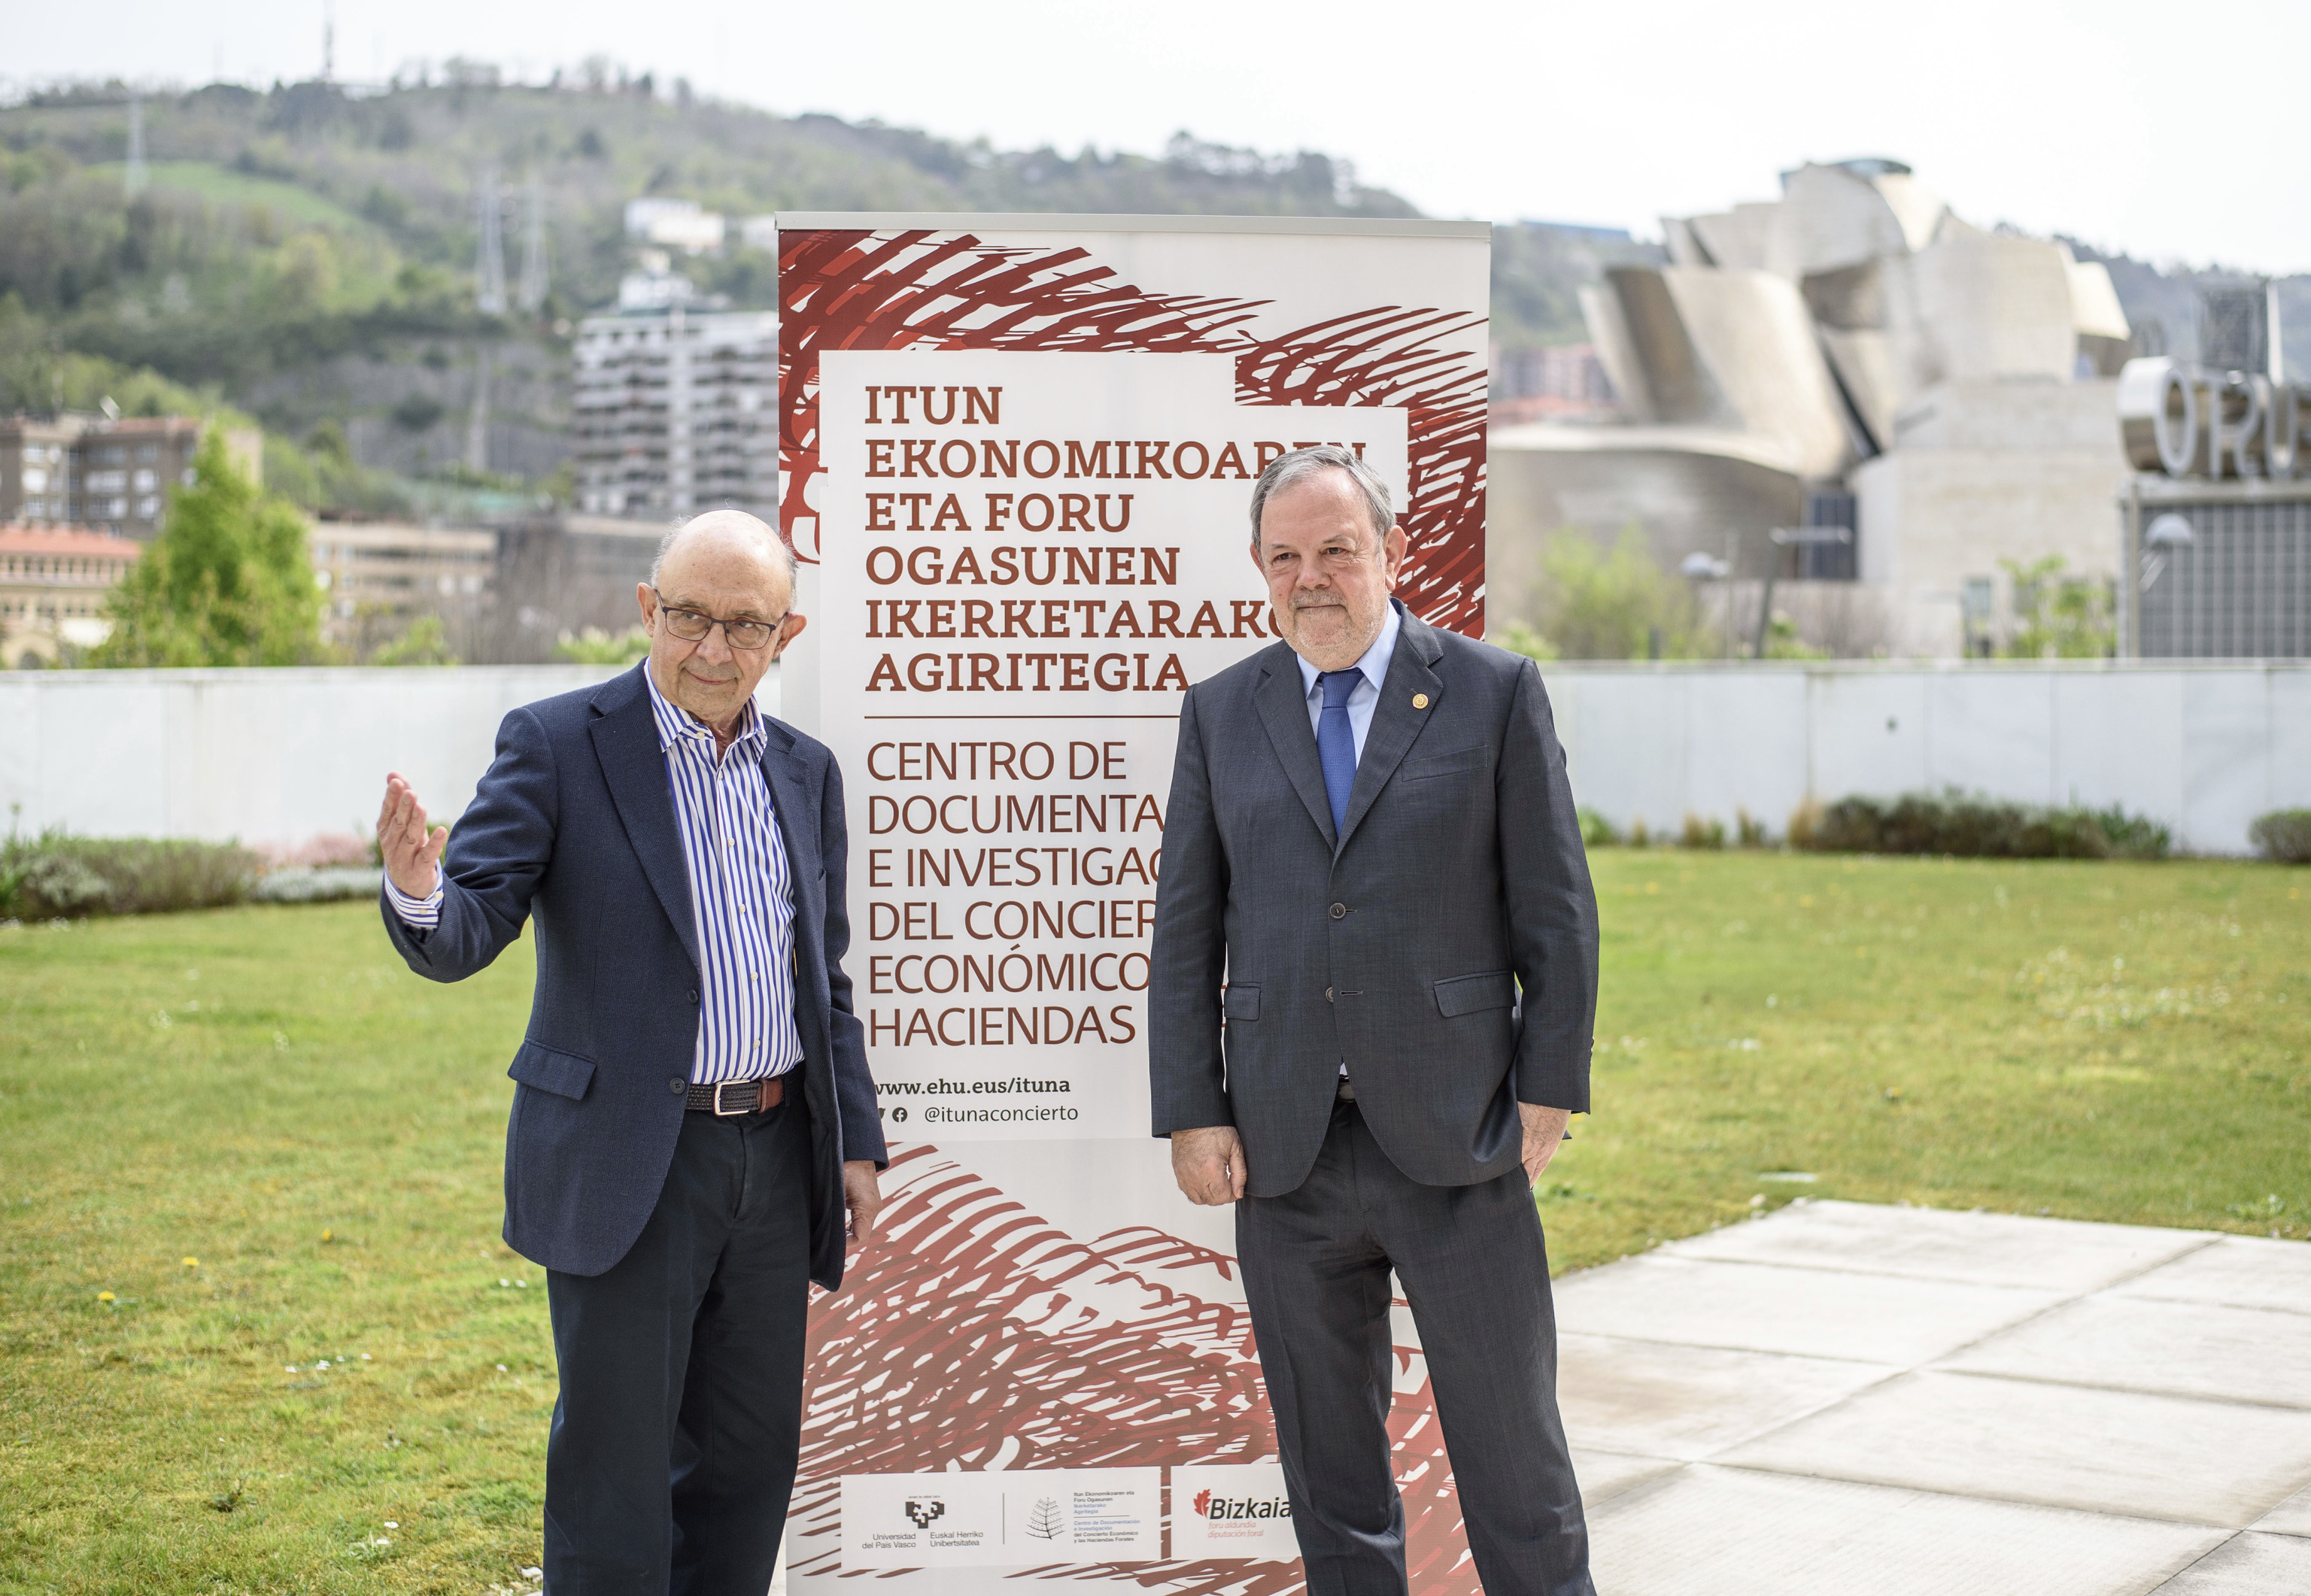 El ex ministro Montoro junto al consejero Pedro Azpiazu durante un encuentro sobre el Concierto Econmico celebrado en Bilbao.